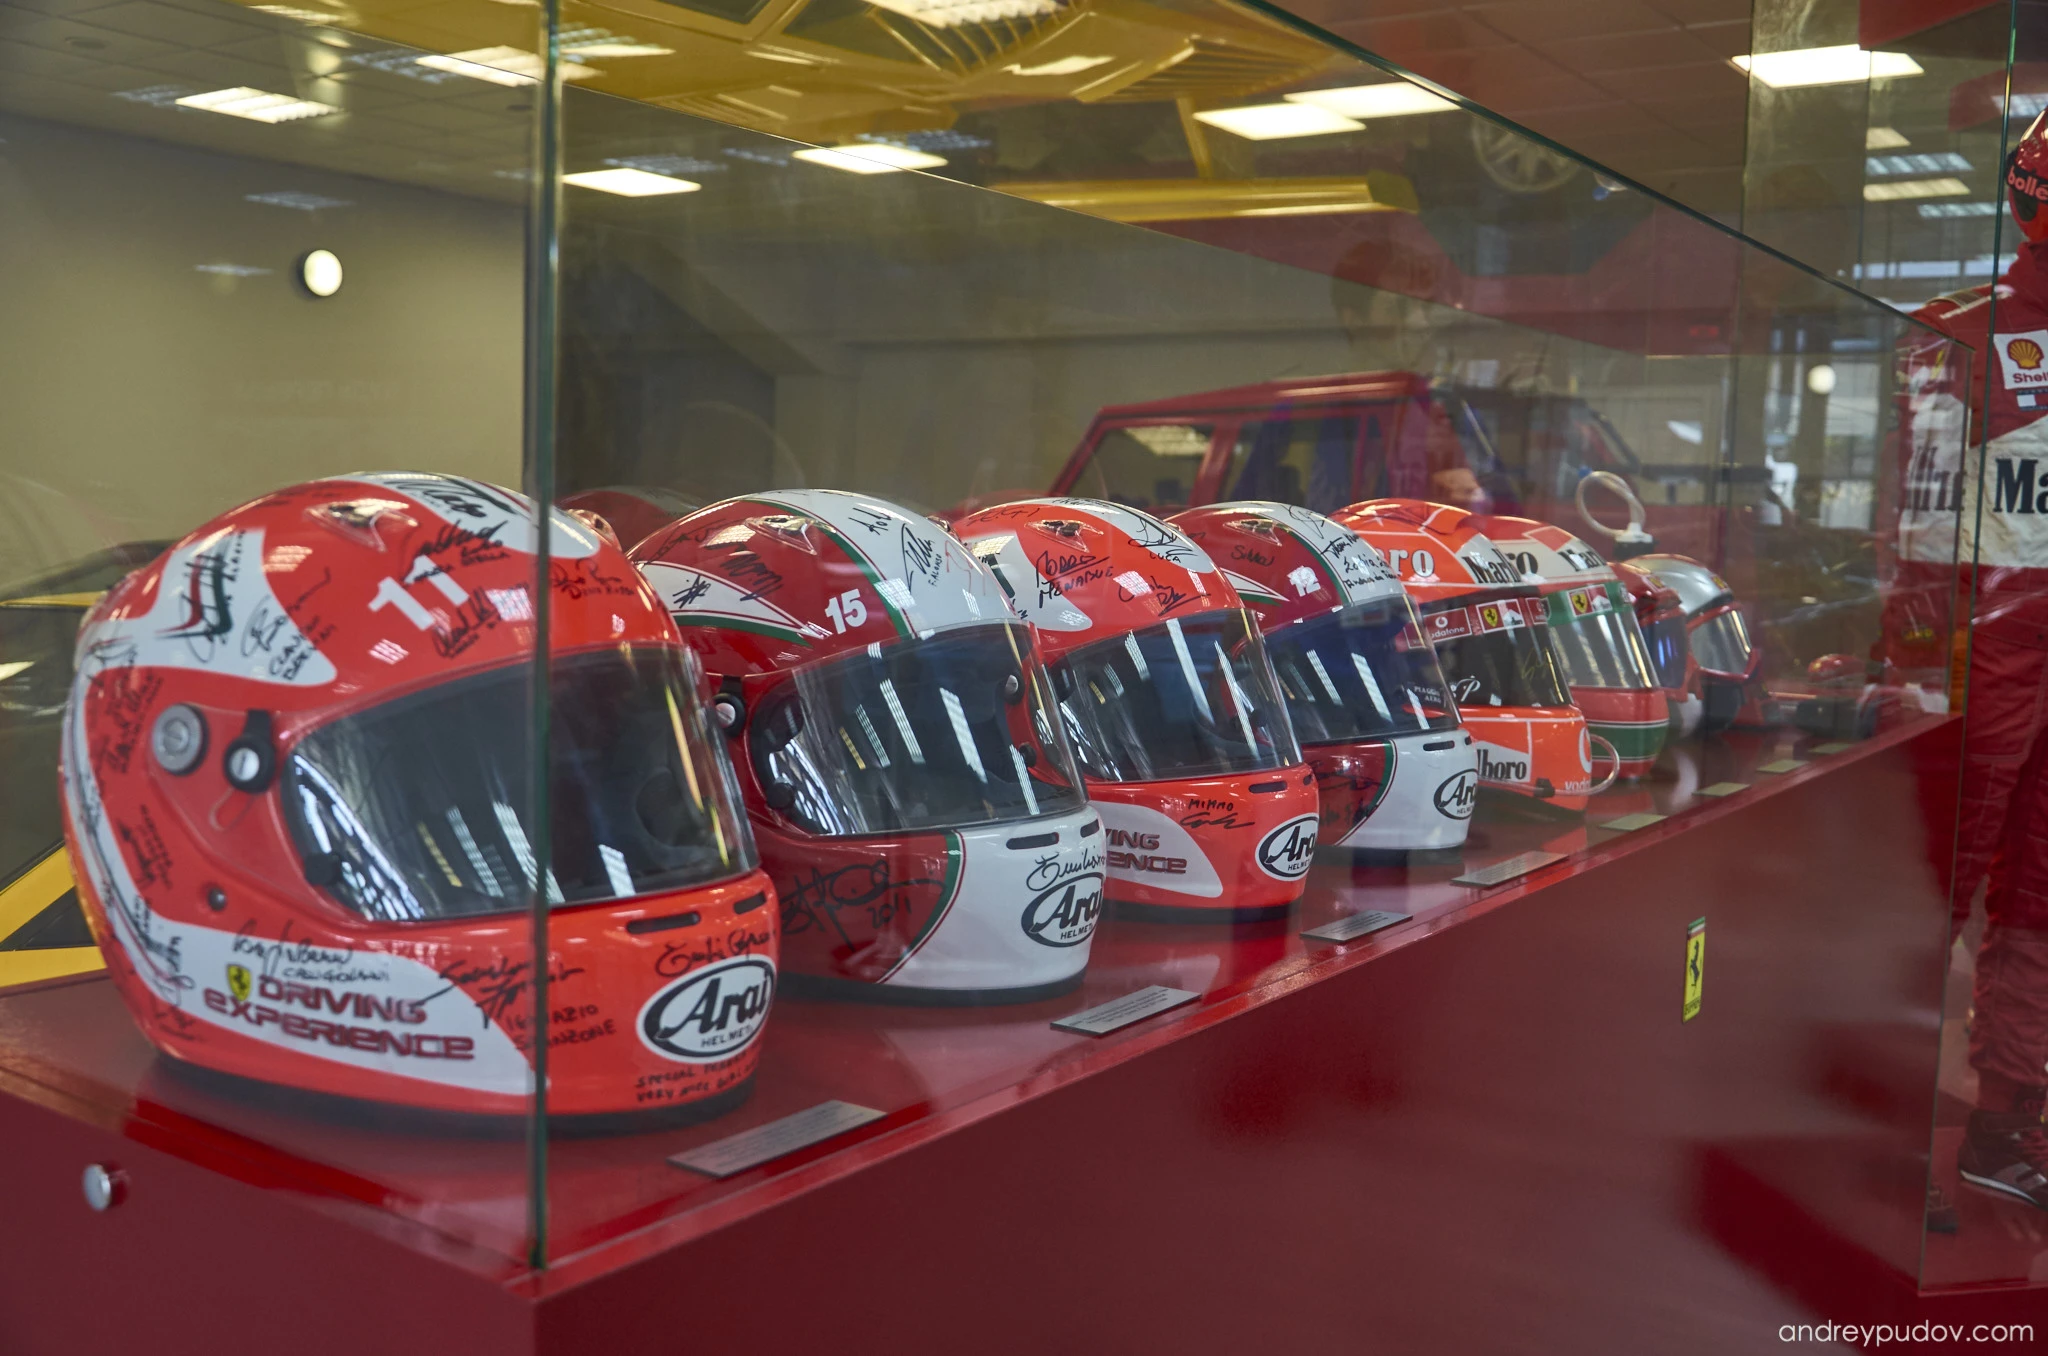 Scuderia Ferrari helmets at Autosport Museum